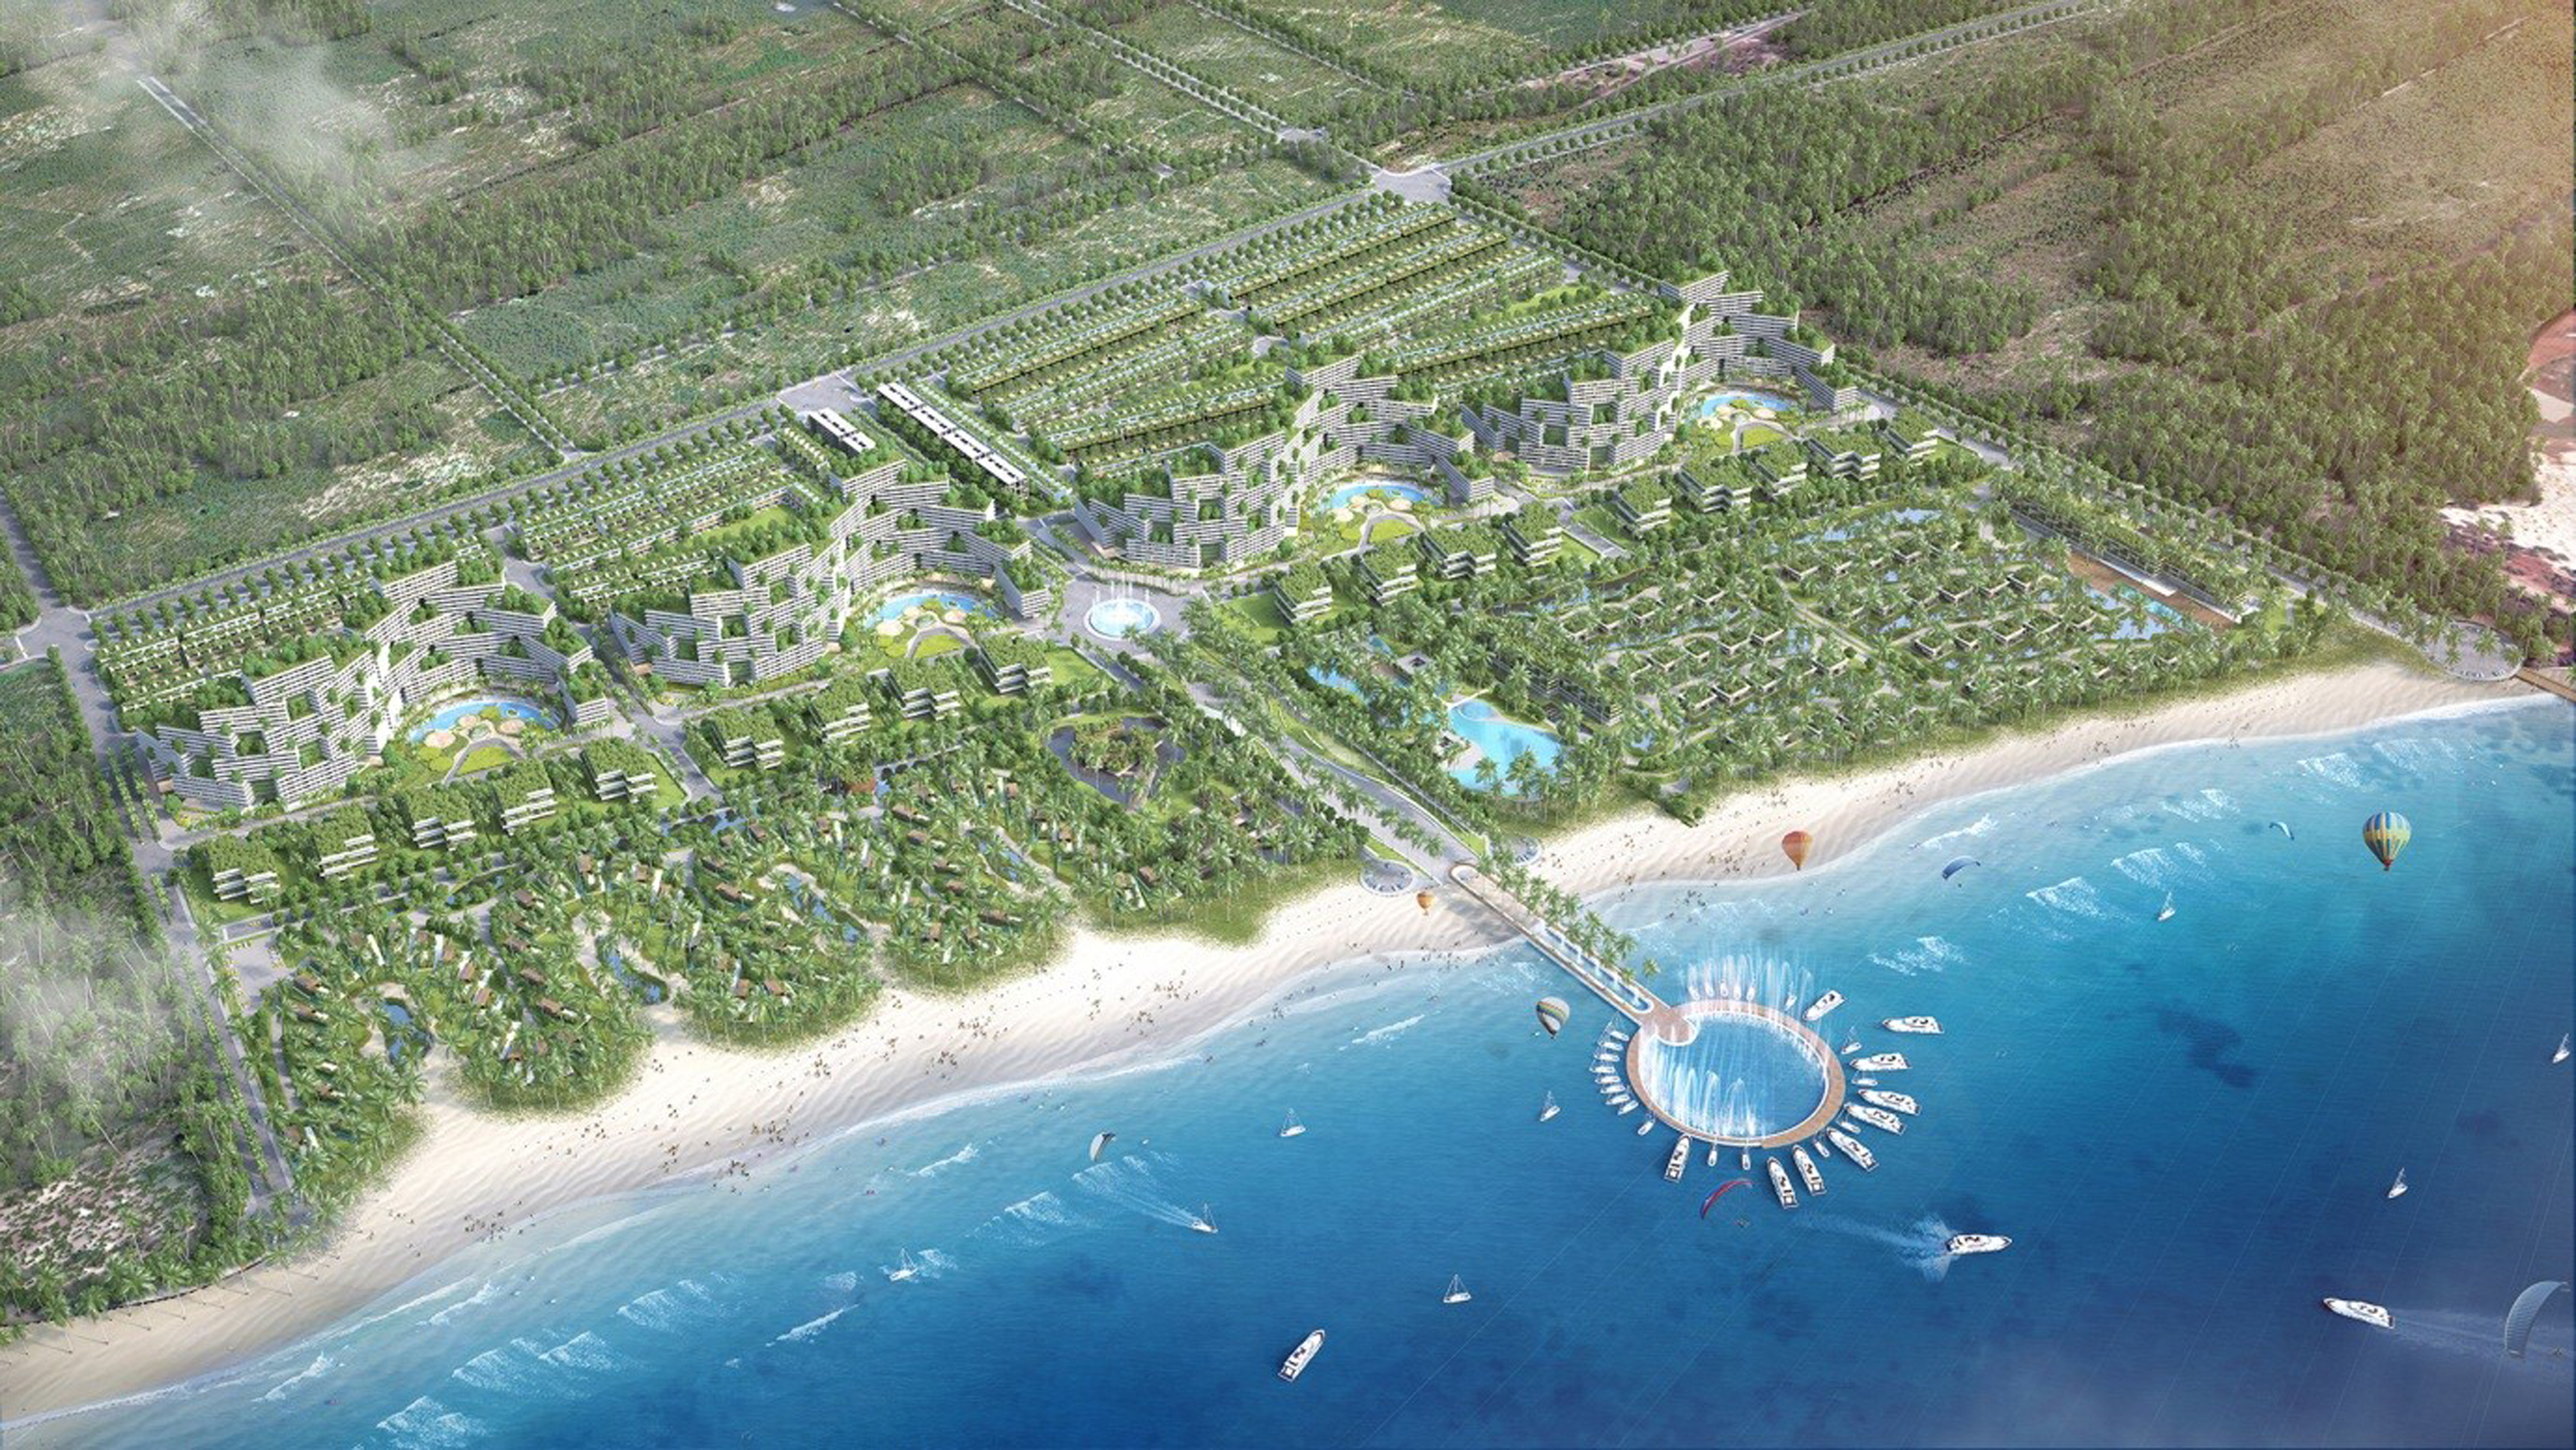  Thanh Long Bay với hàng ngàn tiện ích dự kiến sẽ là trung tâm nghỉ dưỡng - giải trí, văn hóa - ẩm thực lớn nhất khu vực trong bán kính 20km